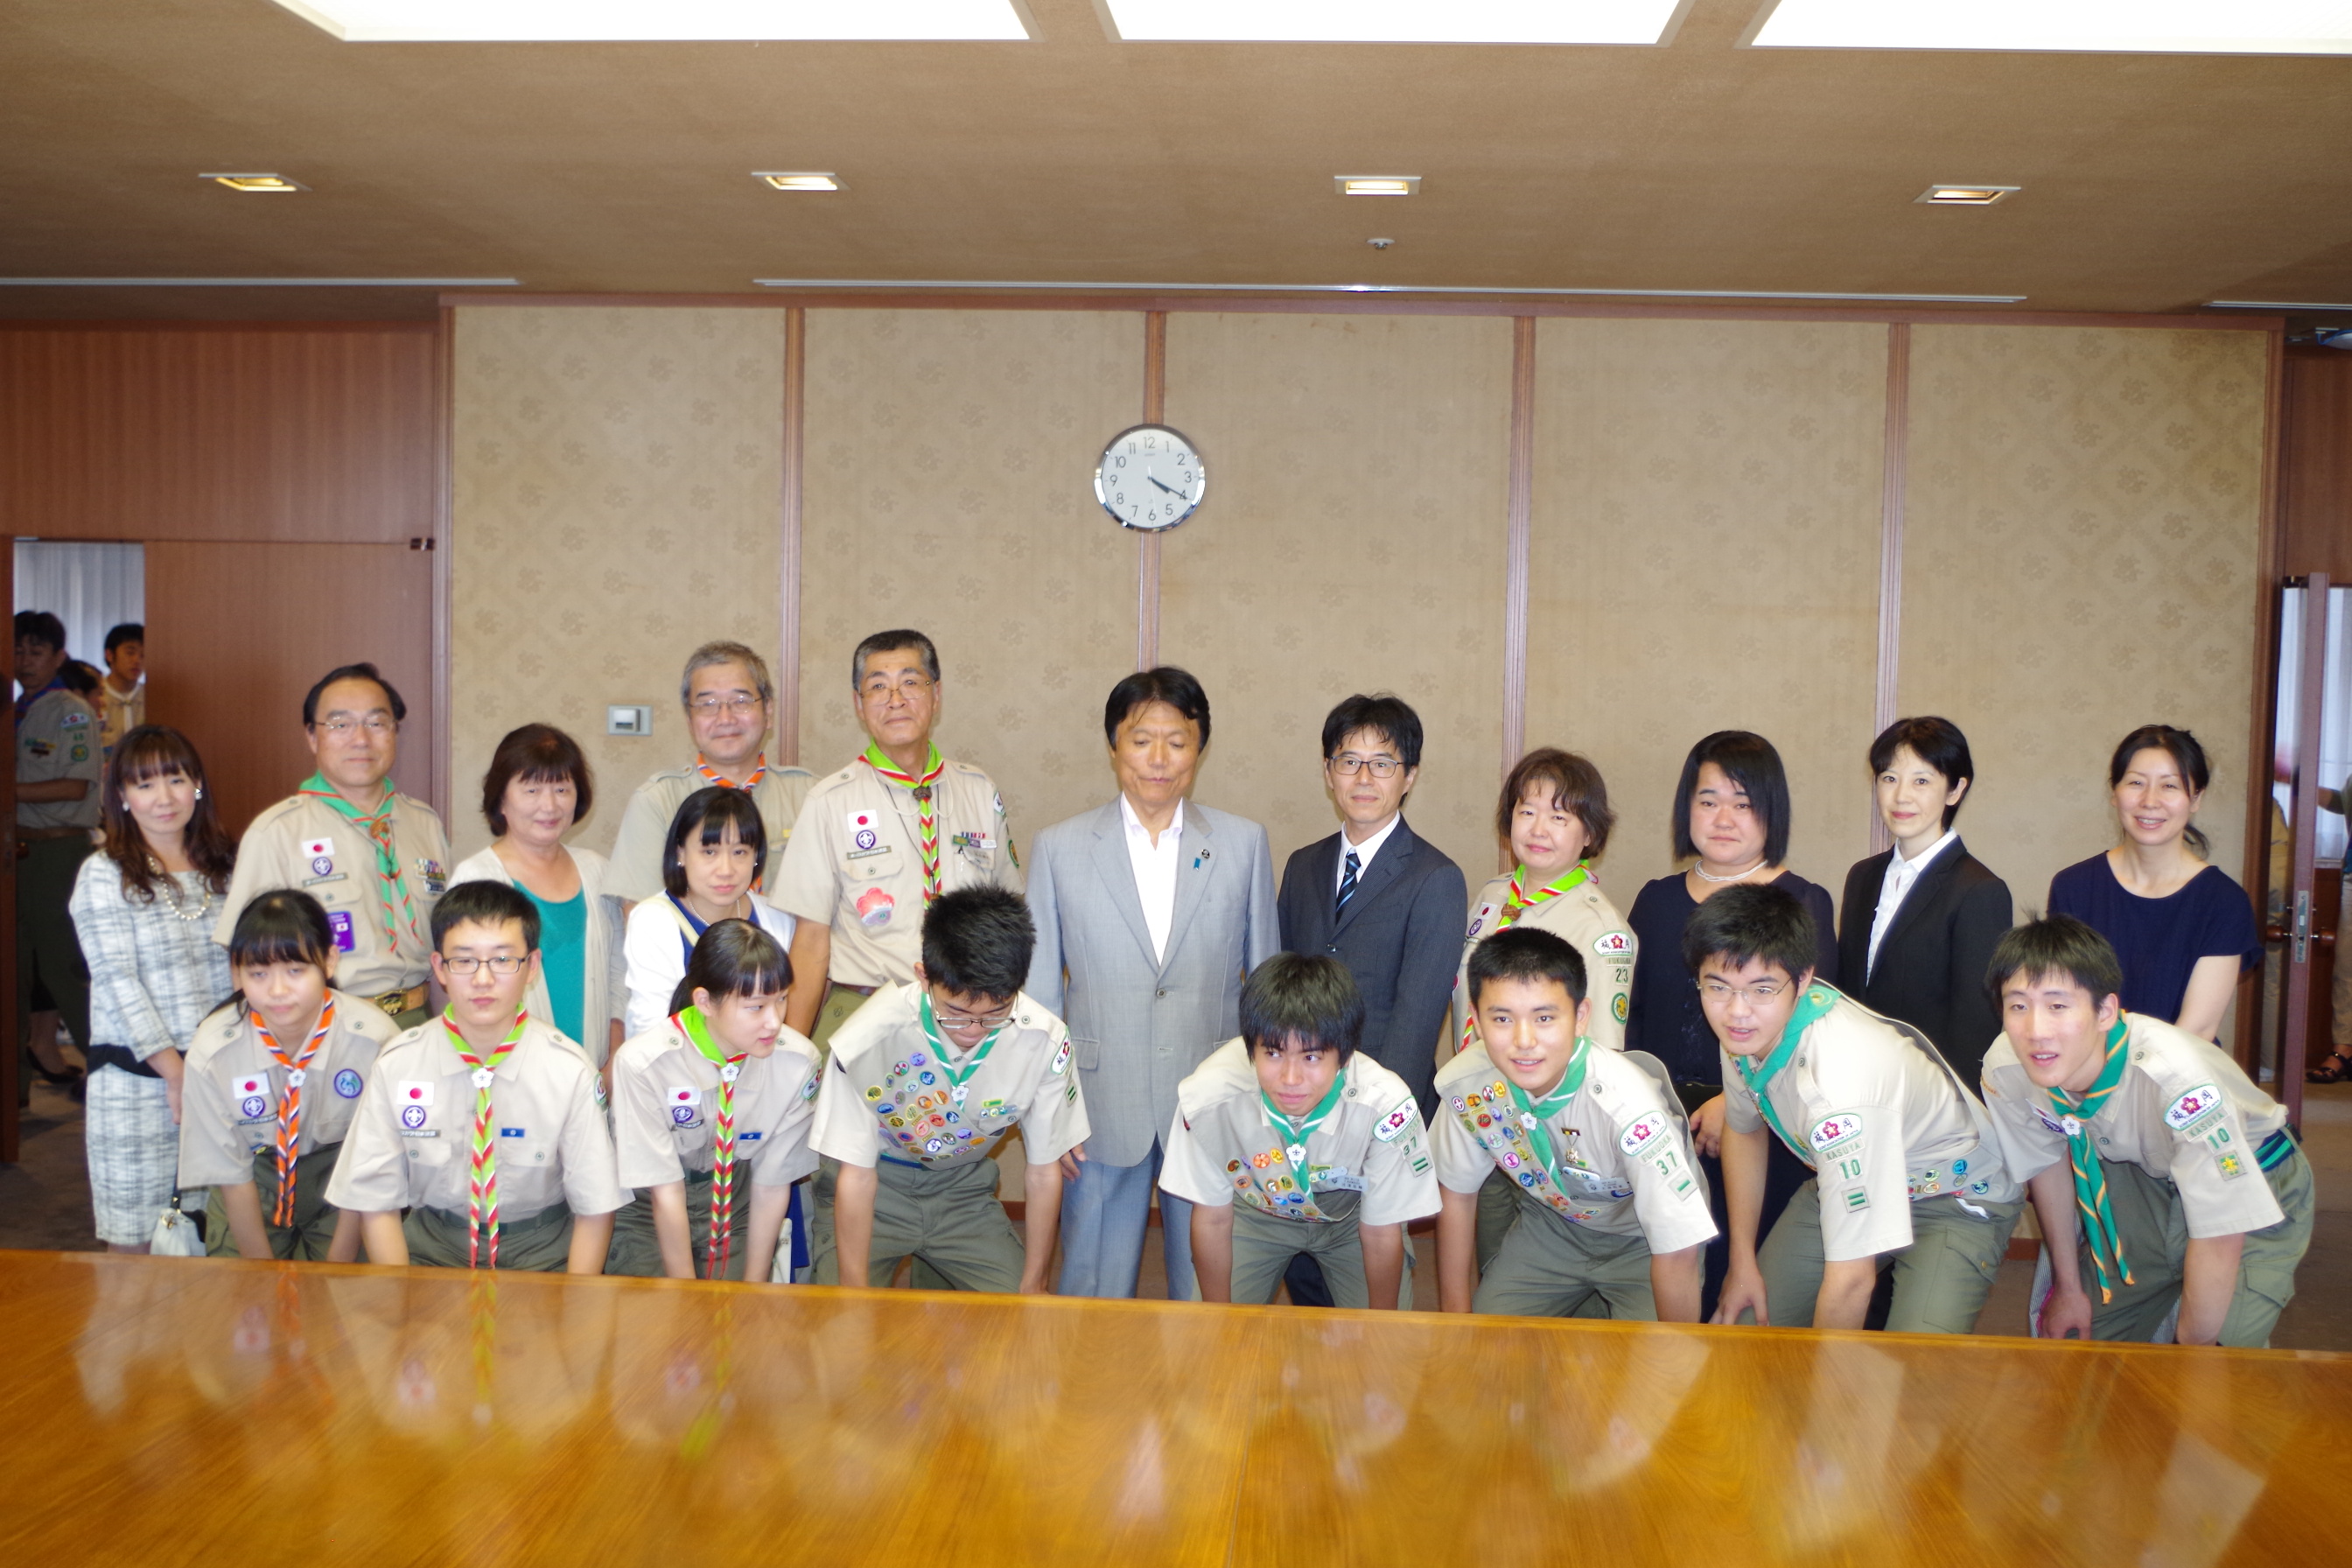 菊スカウトの連盟長表敬訪問が行われました 日本ボーイスカウト 福岡県連盟